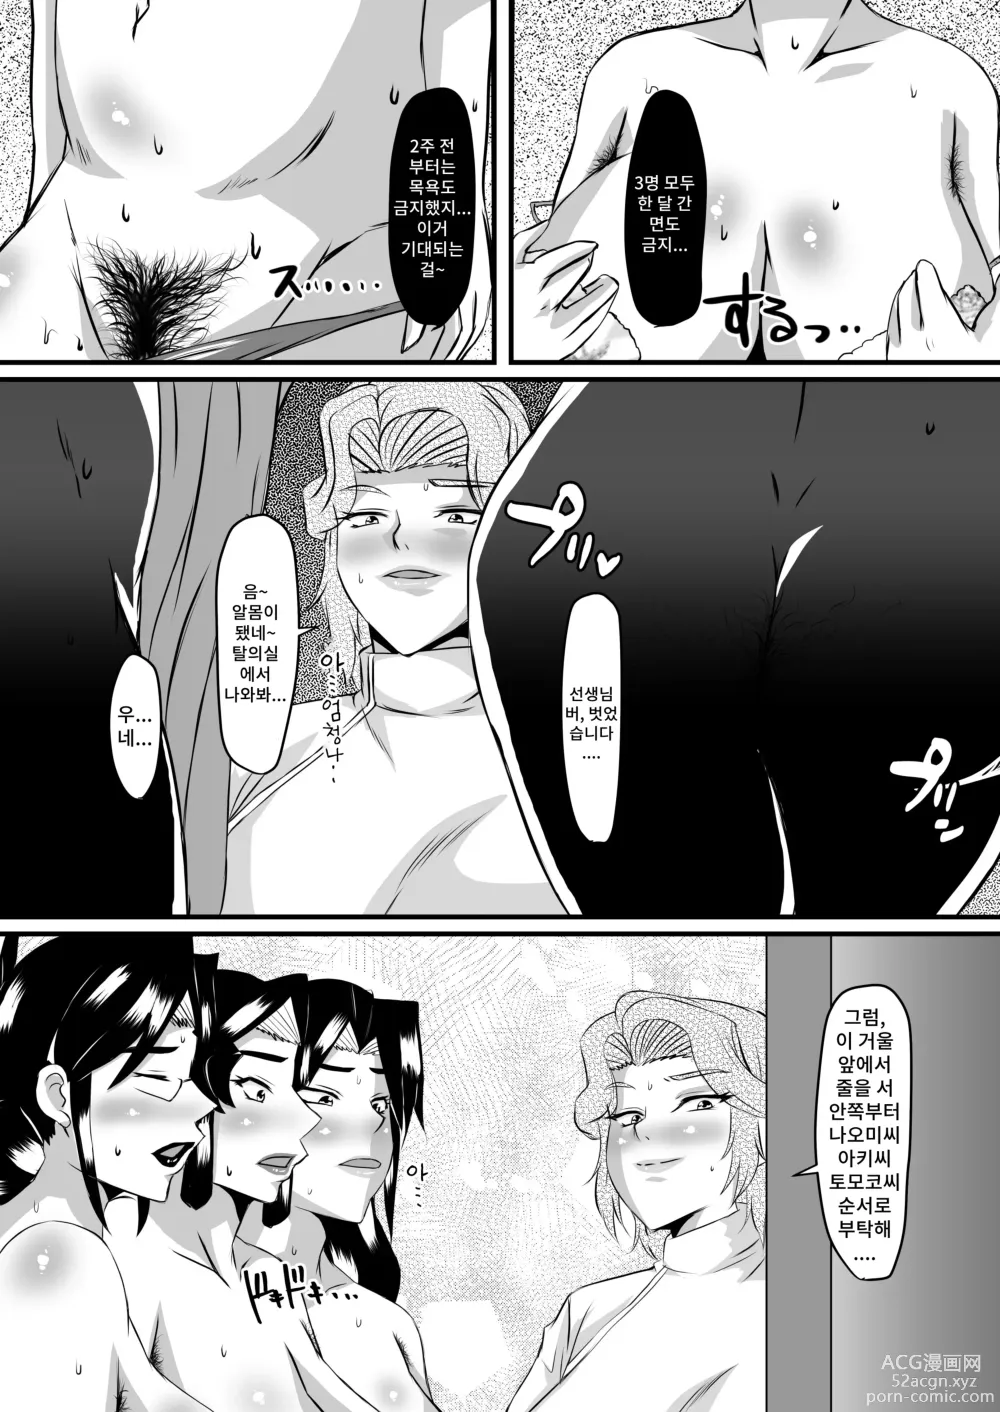 Page 8 of doujinshi 레이카 선생님의 음란충 똥구멍 에스테틱2